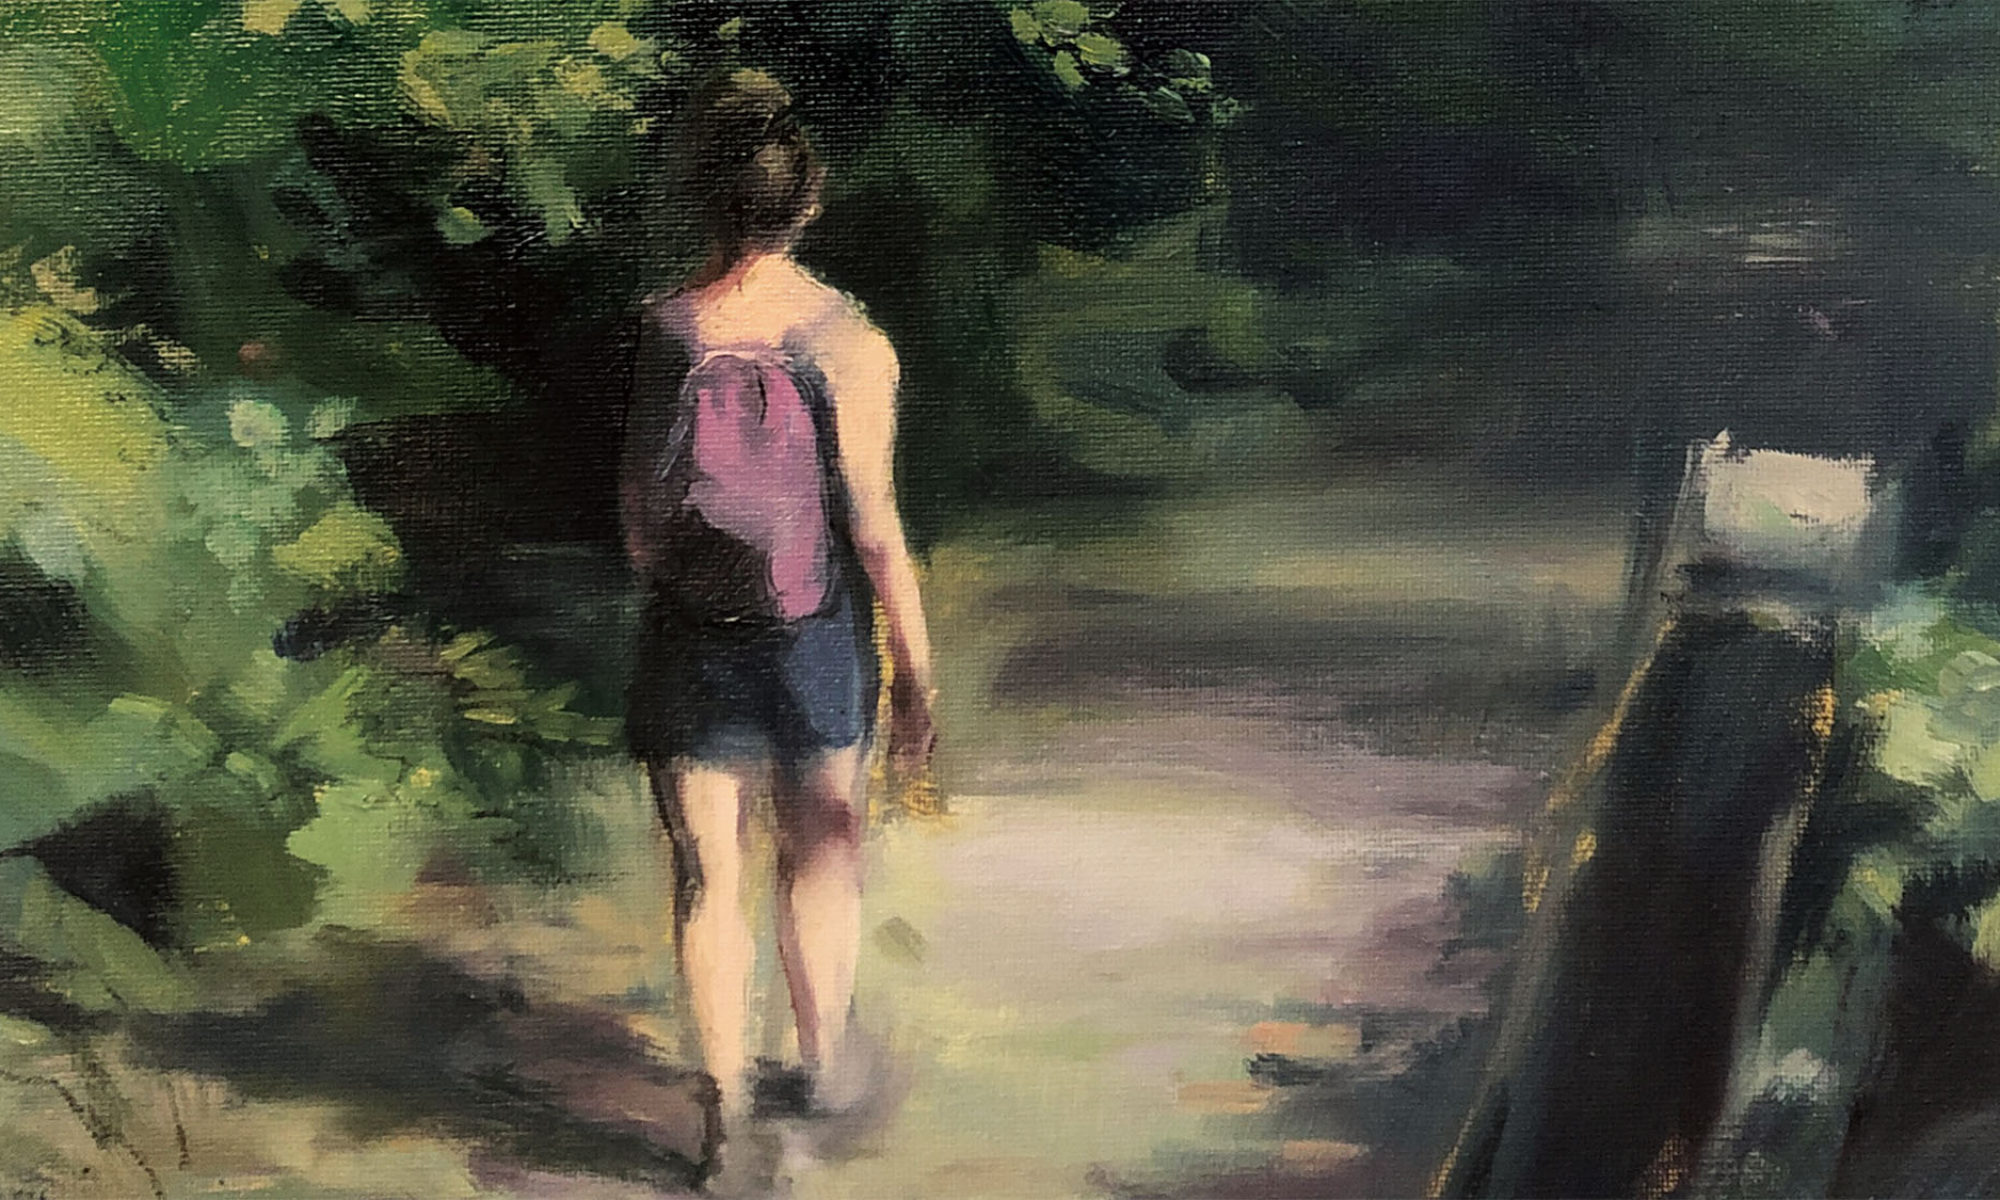 Utsnitt av en oljemålning som föreställer en tjej i linne och shorts som går på en skogsväg.